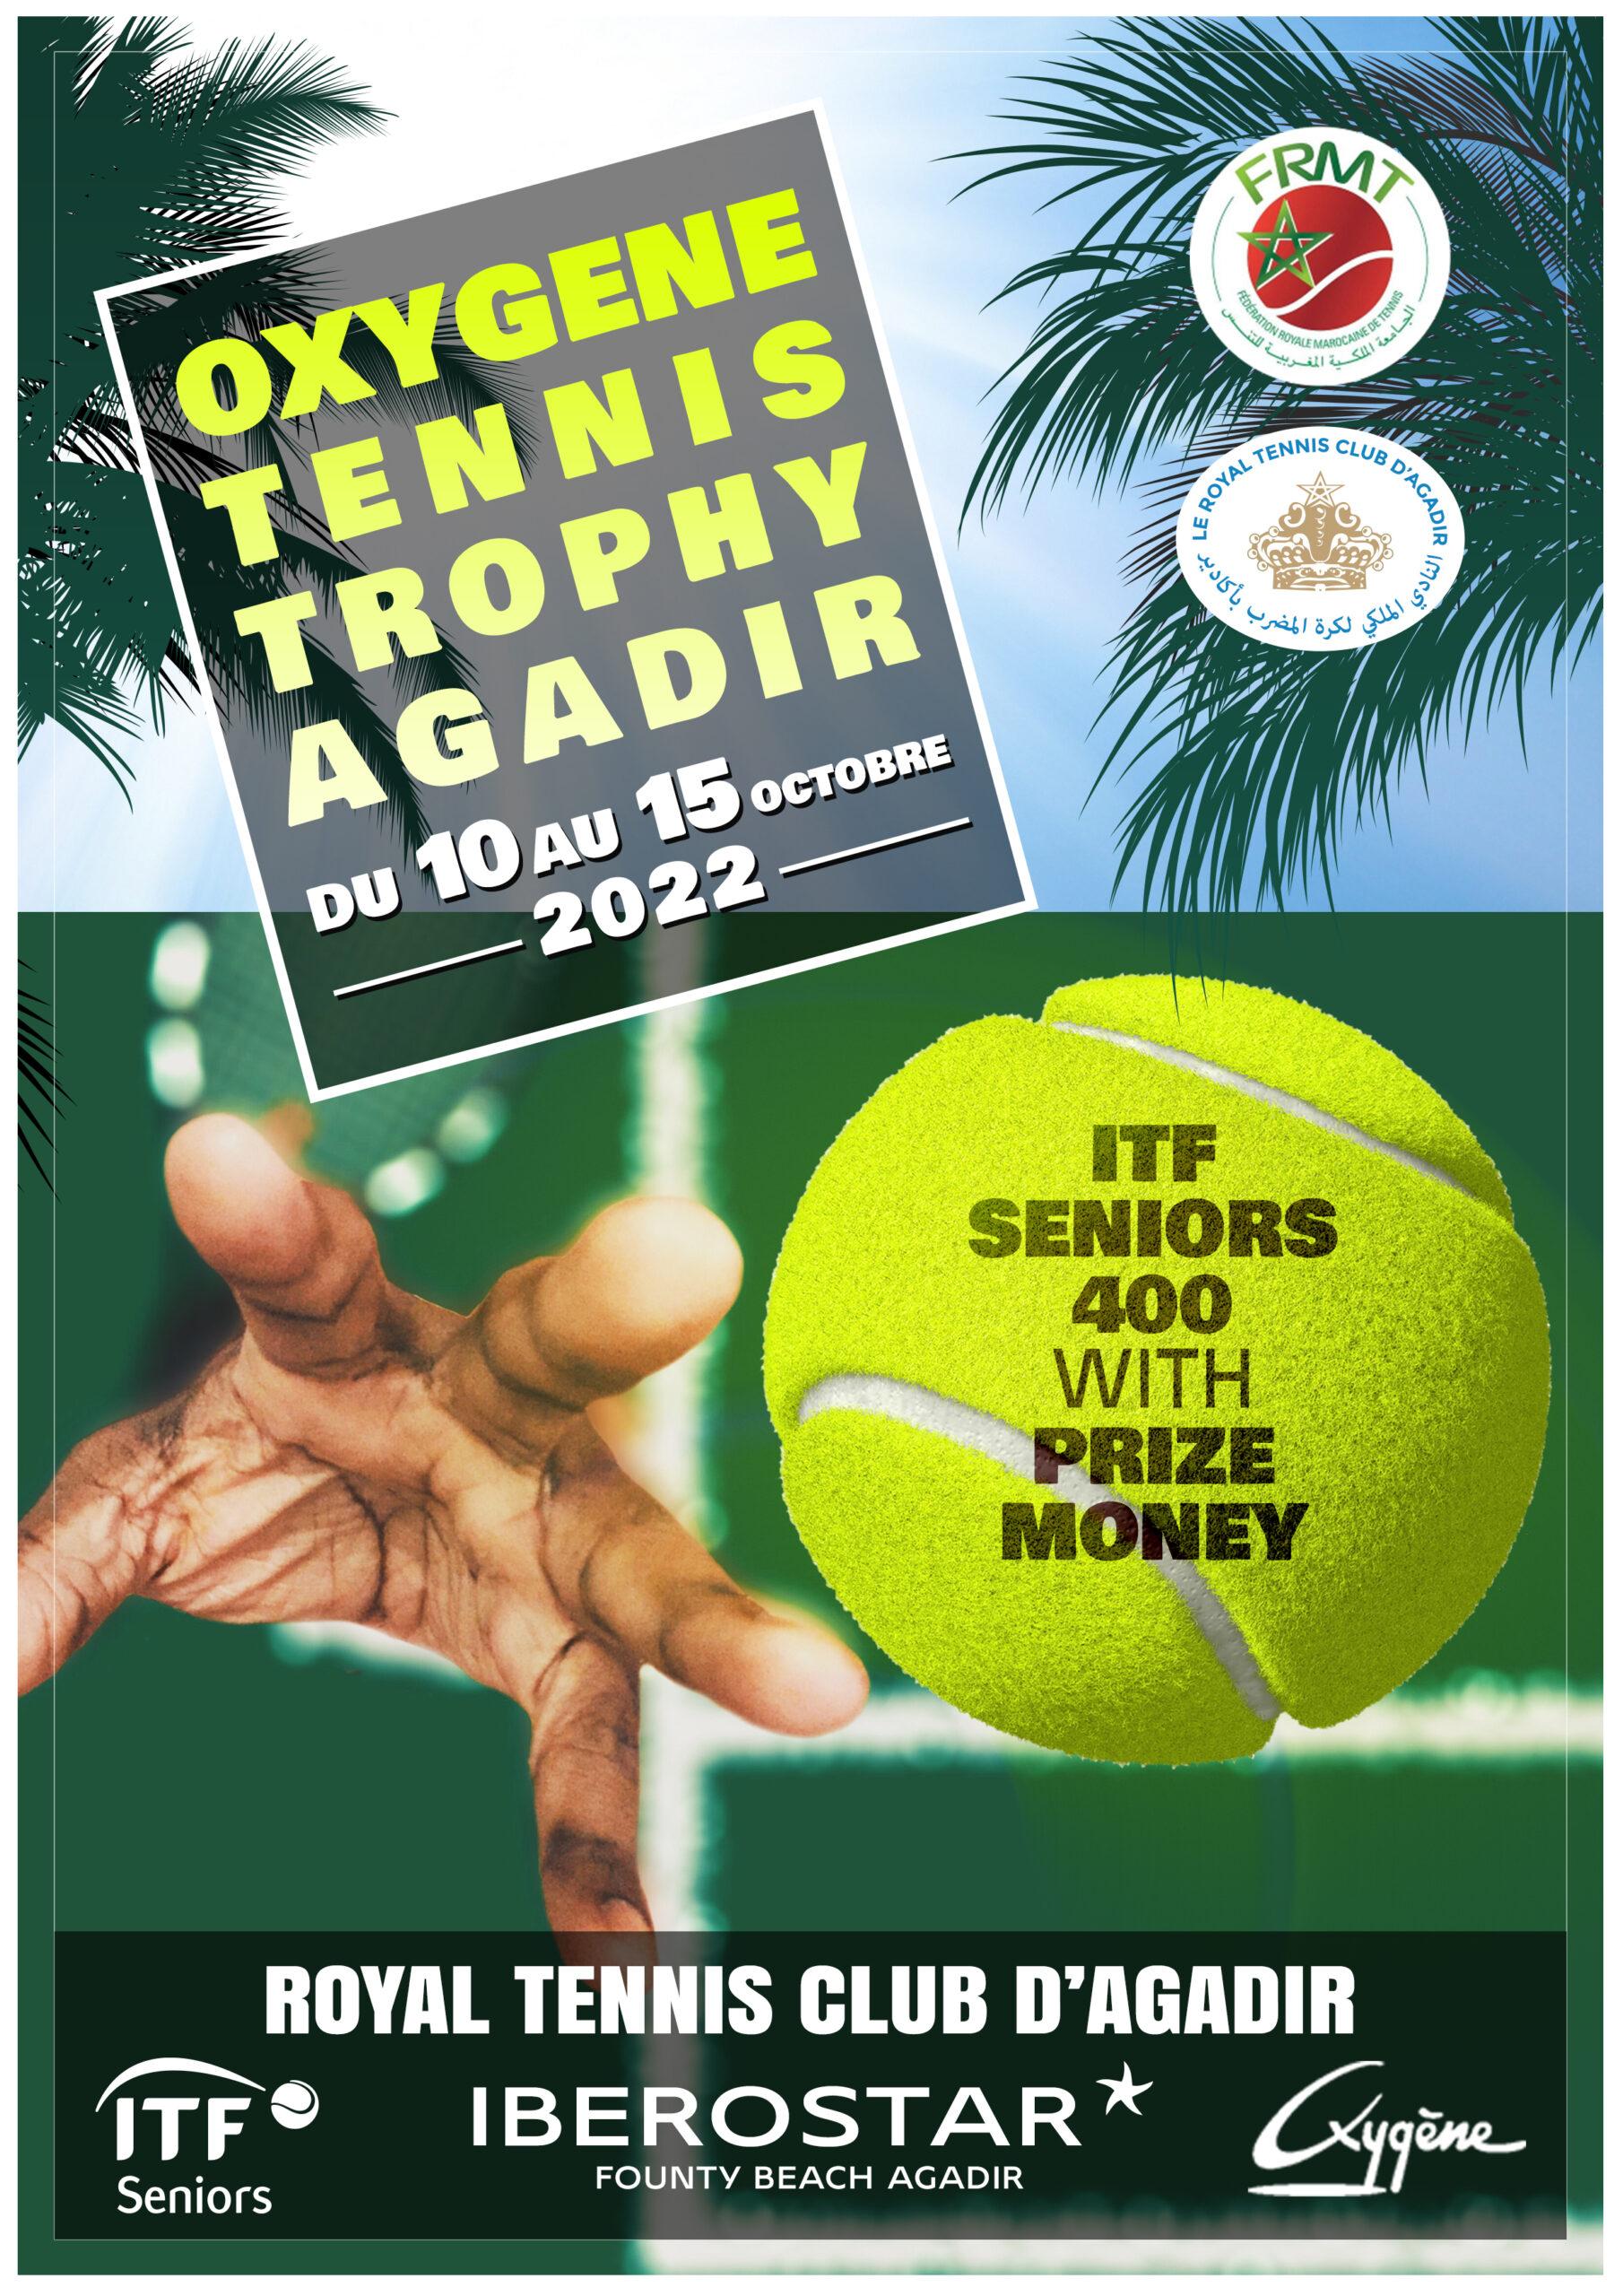 ITF SENIORS400 - AGADIR 2022 - OXYGENE